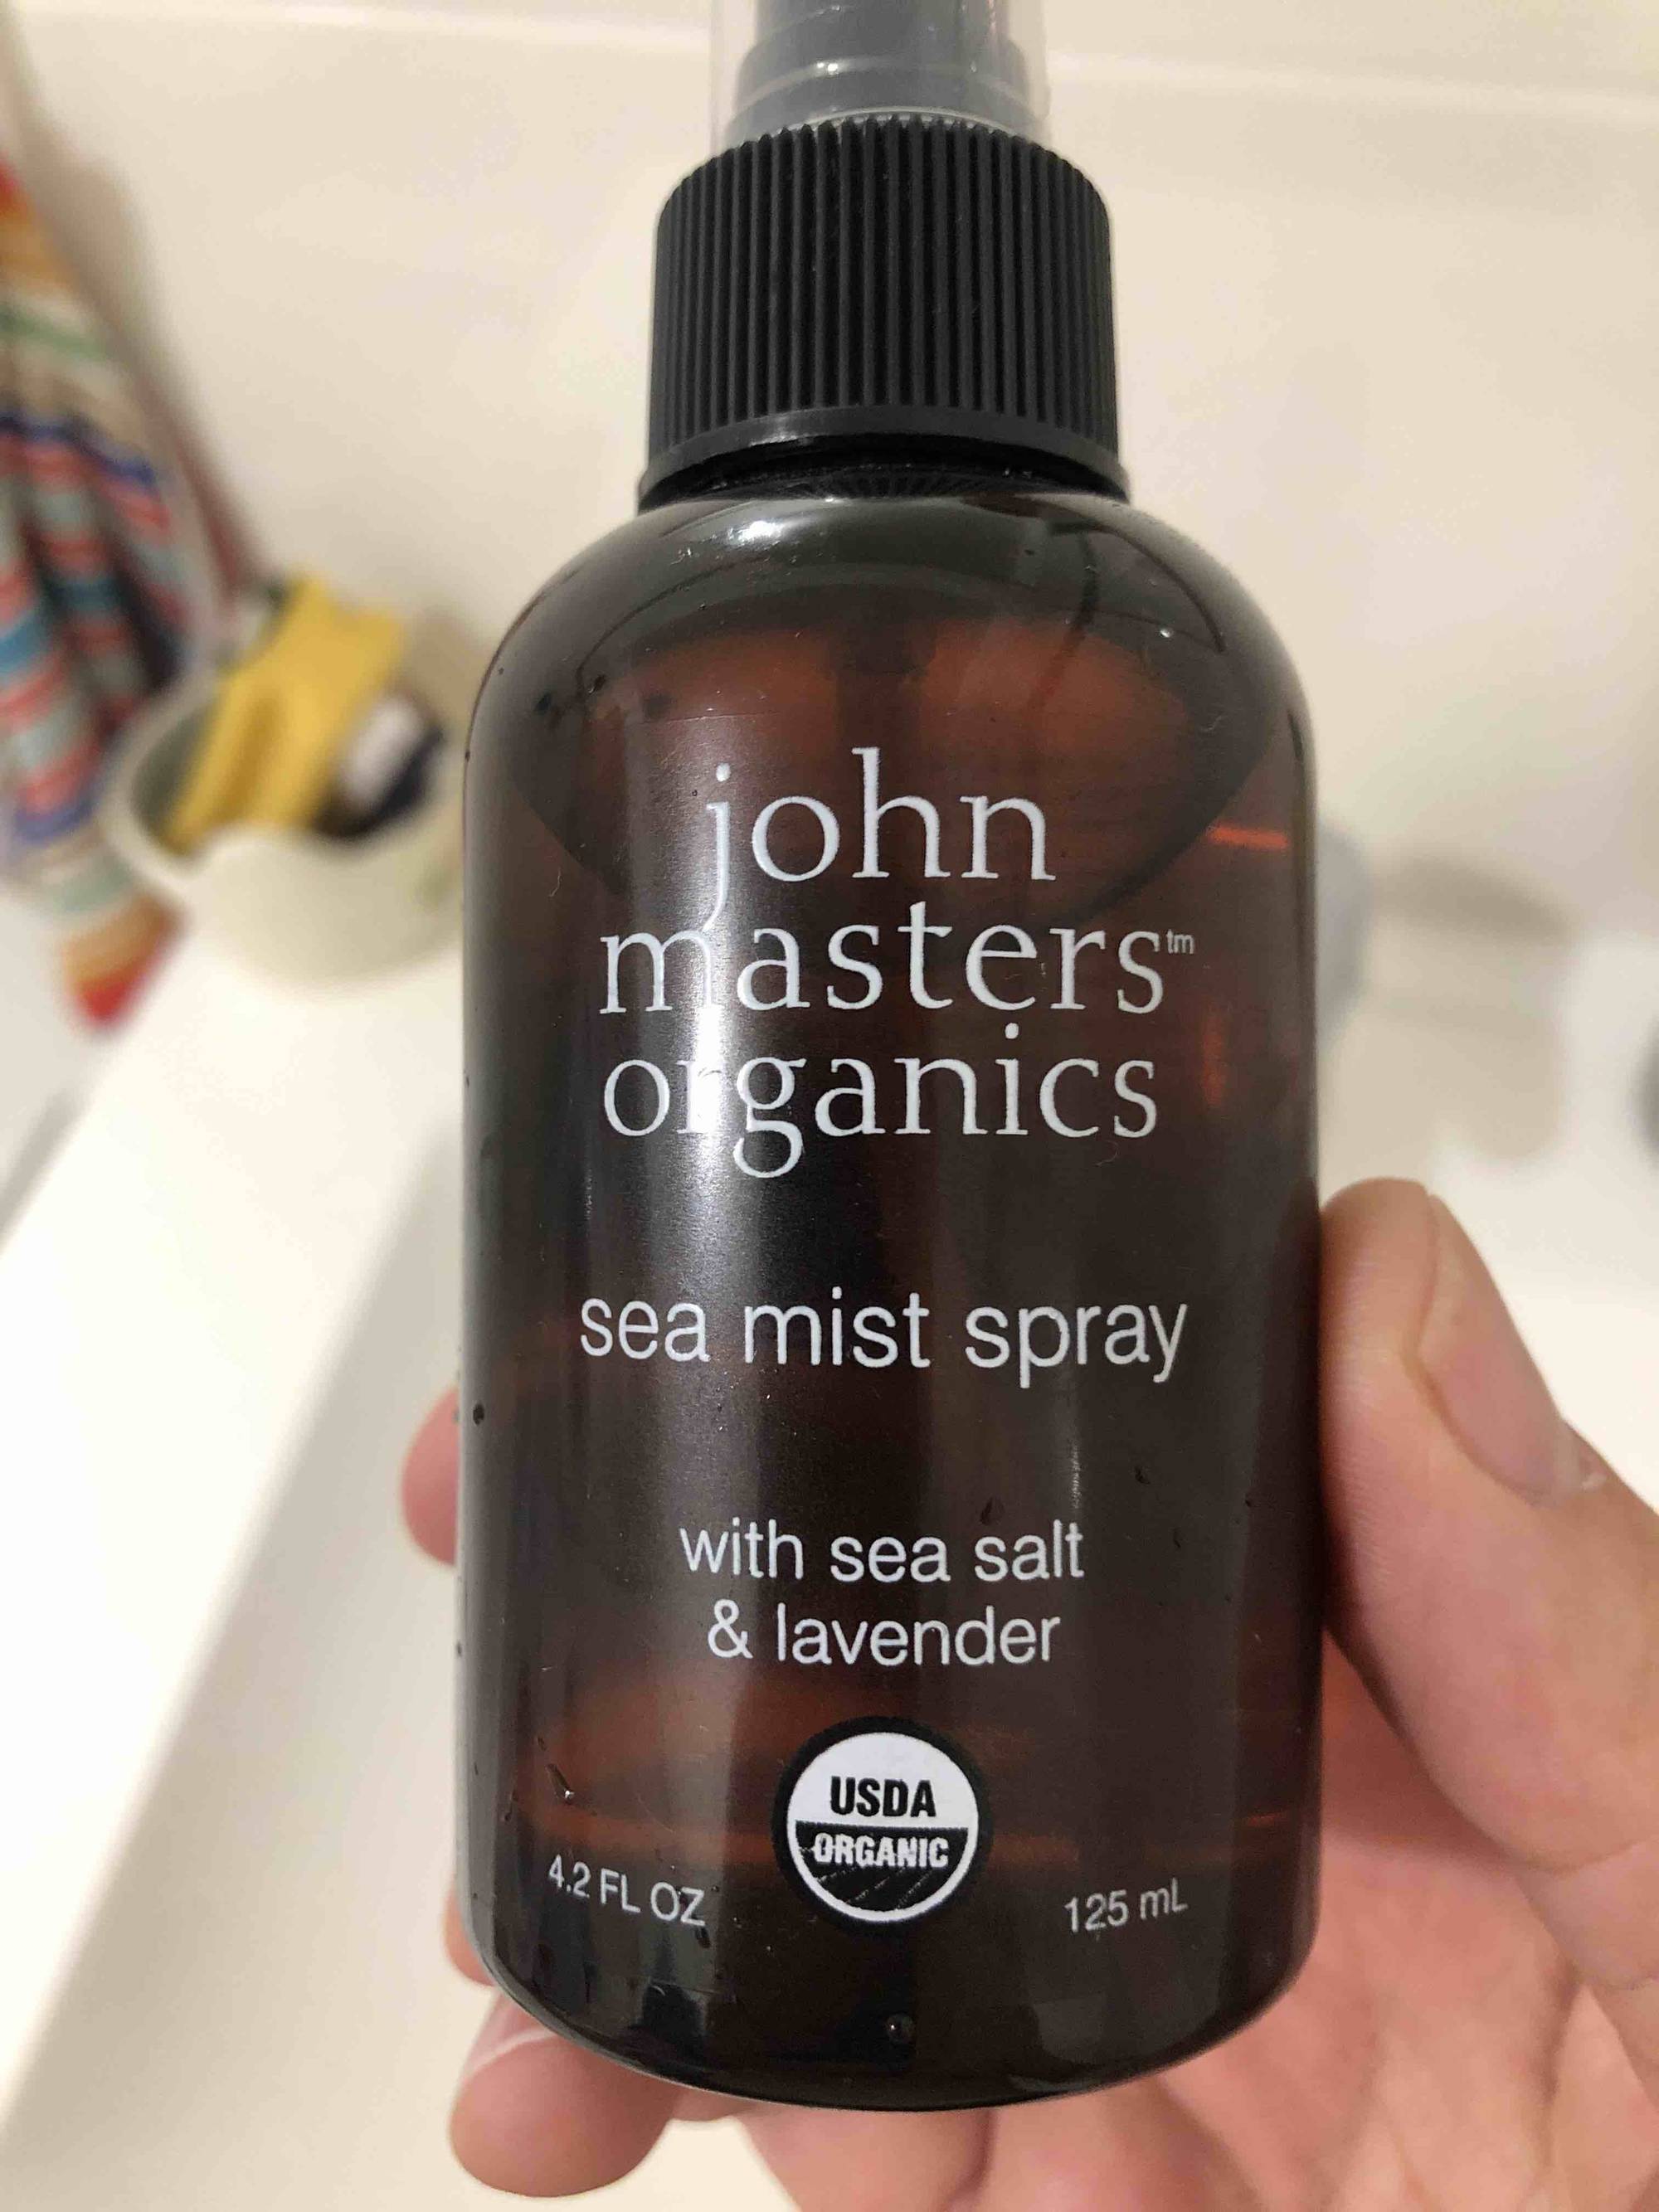 JOHN MASTERS ORGANICS - Sea mist spray with sea sal & lavender